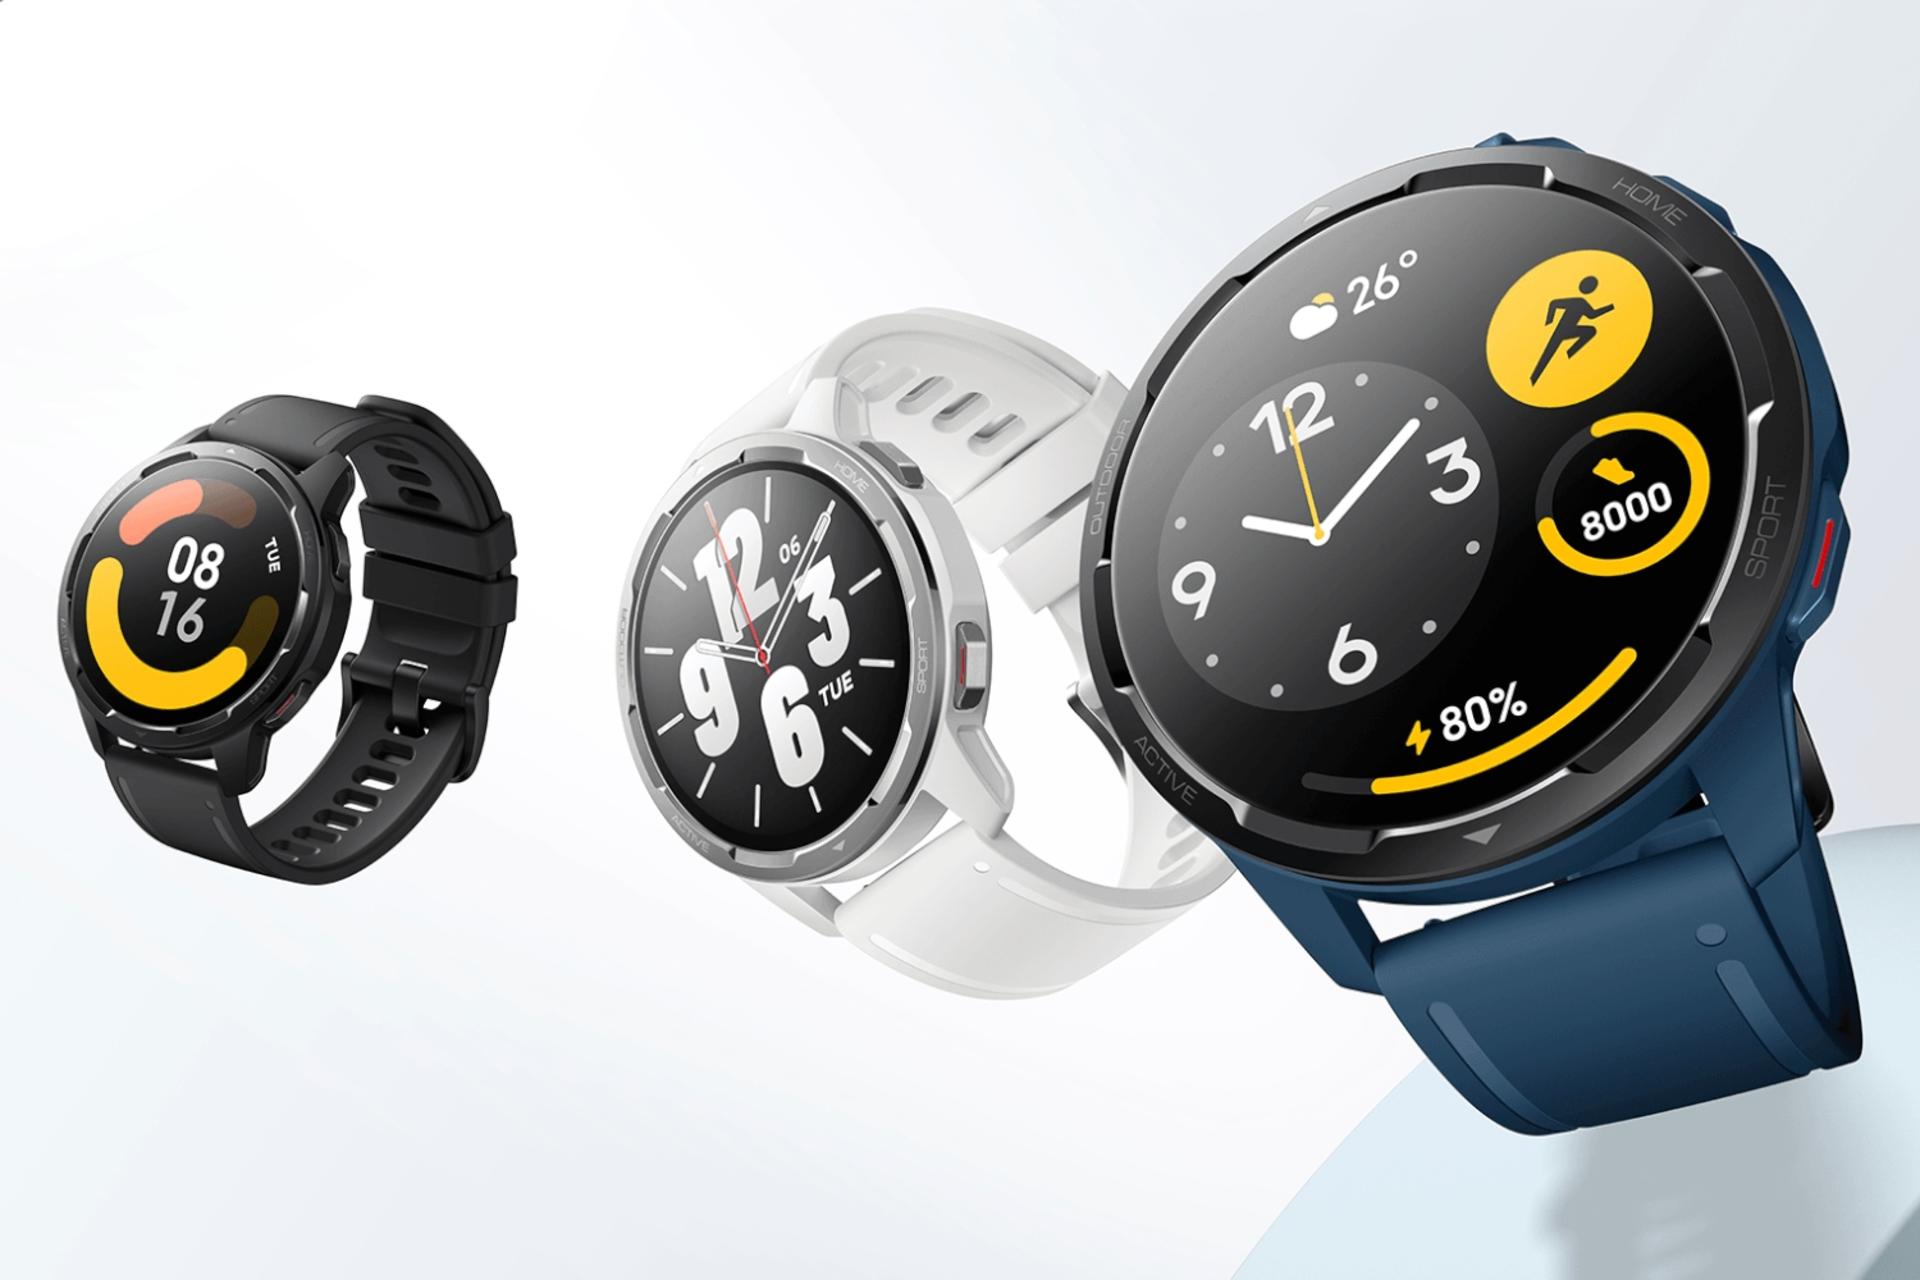 رنگ های مختلف ساعت هوشمند واچ S1 اکتیو شیائومی / Xiaomi Watch S1 Active